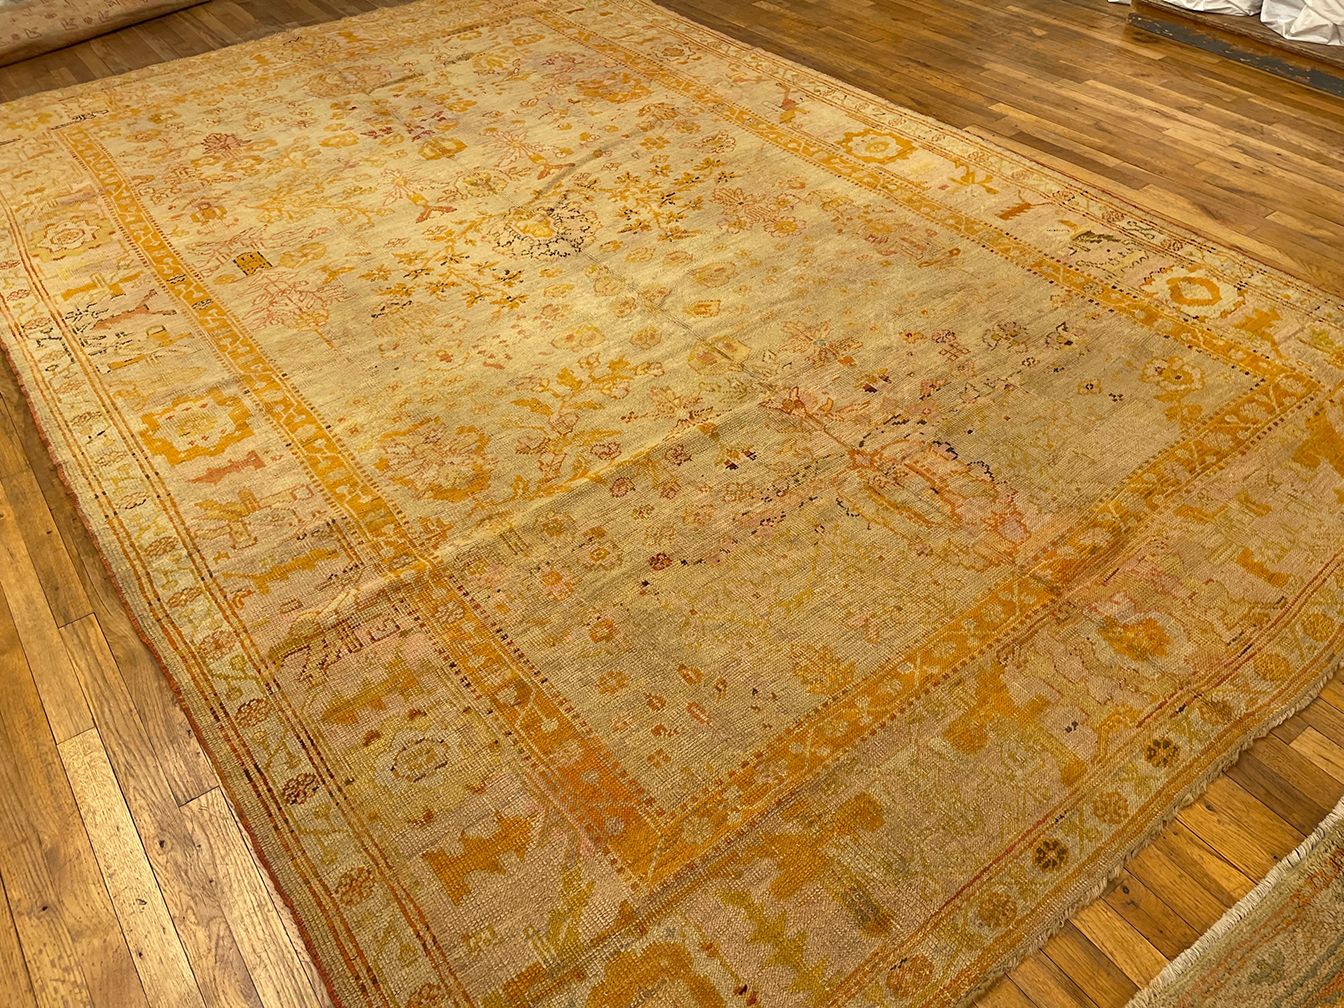 Antique oushak Carpet - # 57219